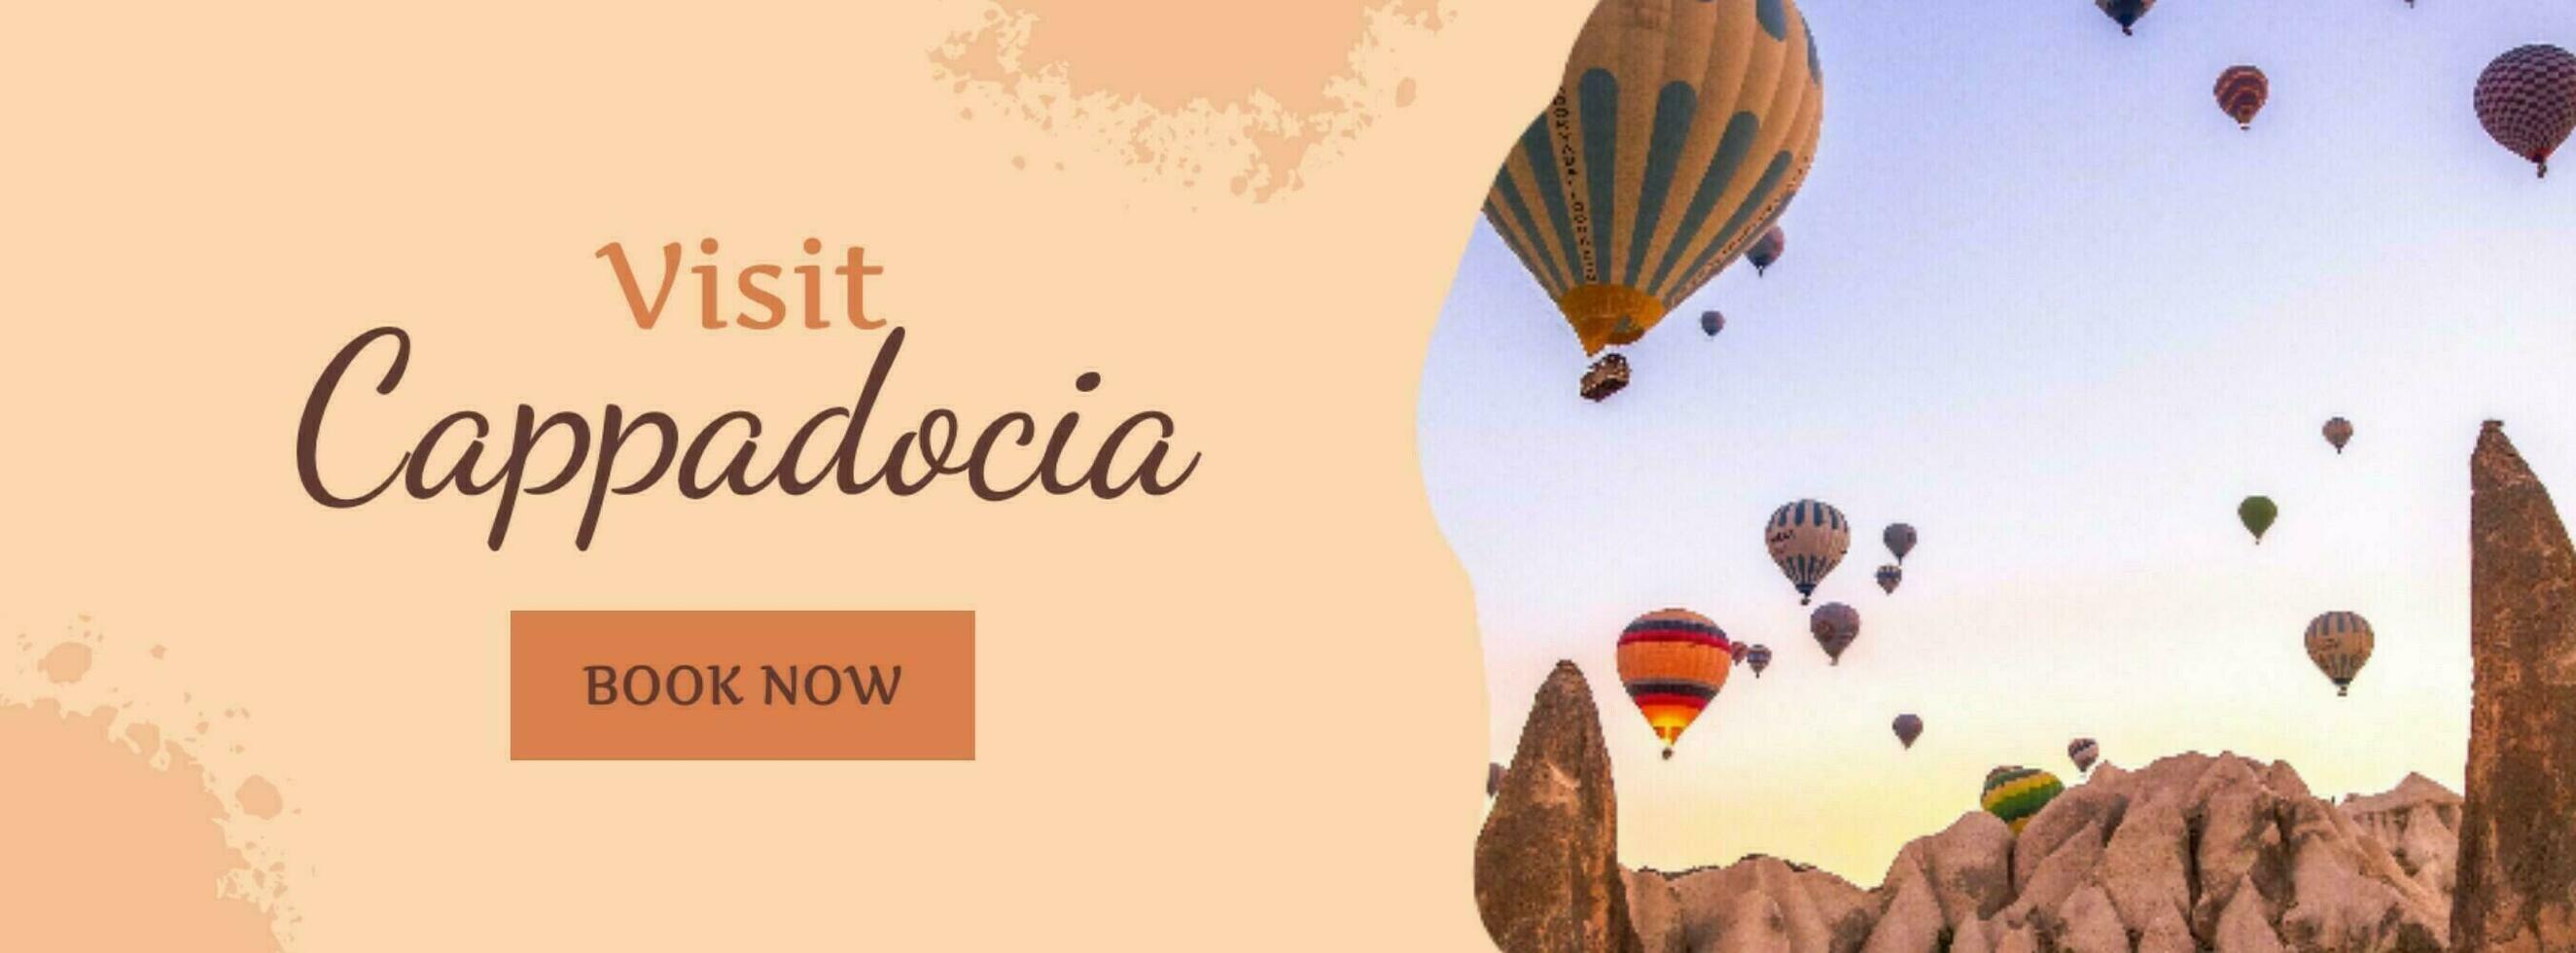 Beige Feminine Travel Visit Cappadocia Facebook Cover template